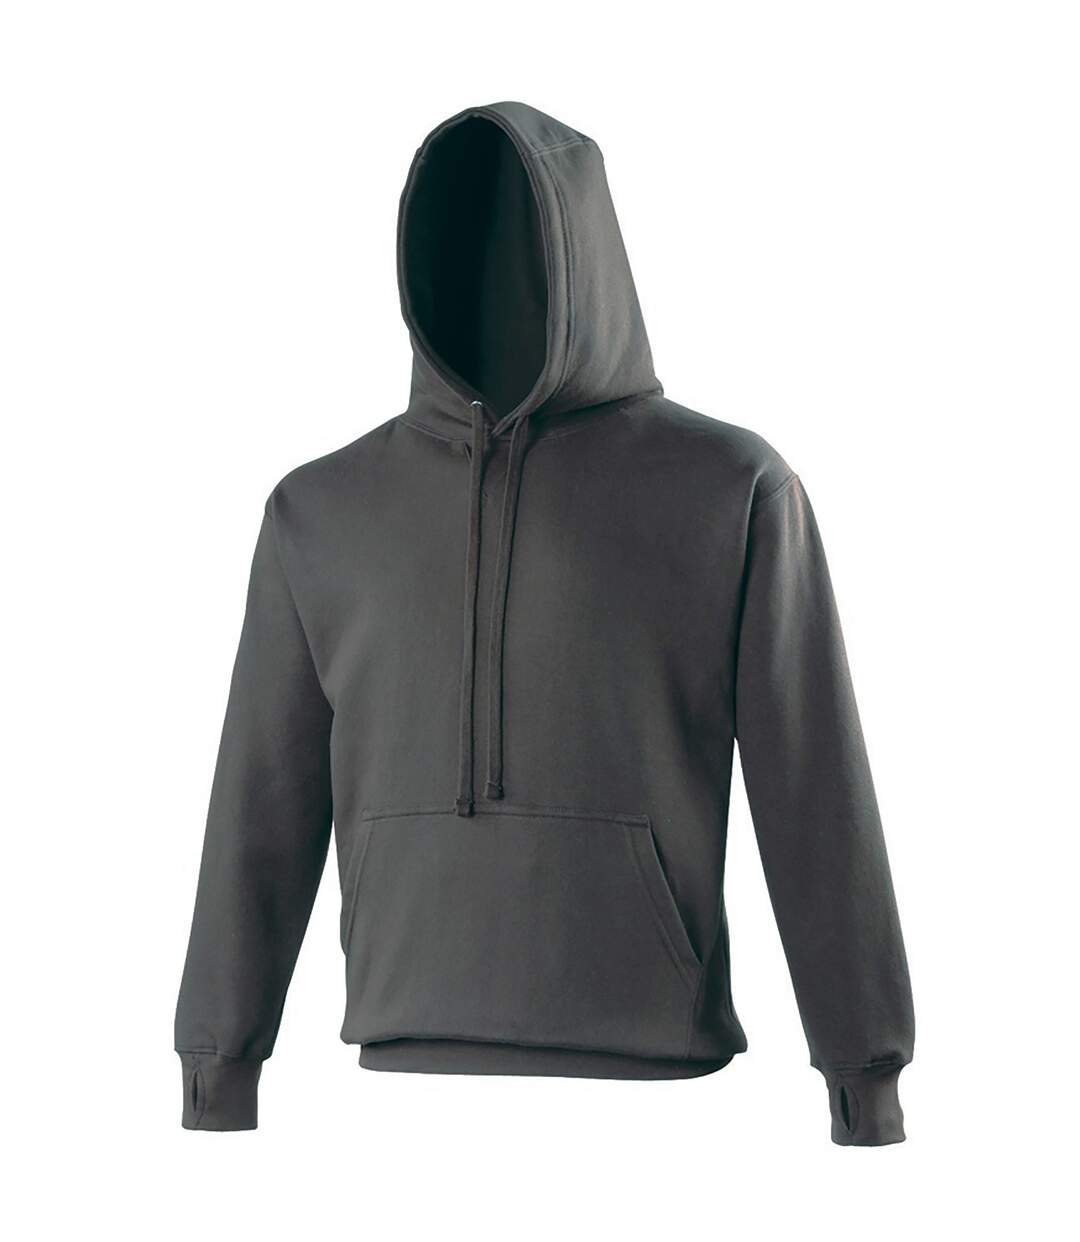 Awdis Mens Street Hooded Sweatshirt / Hoodie (Charcoal)